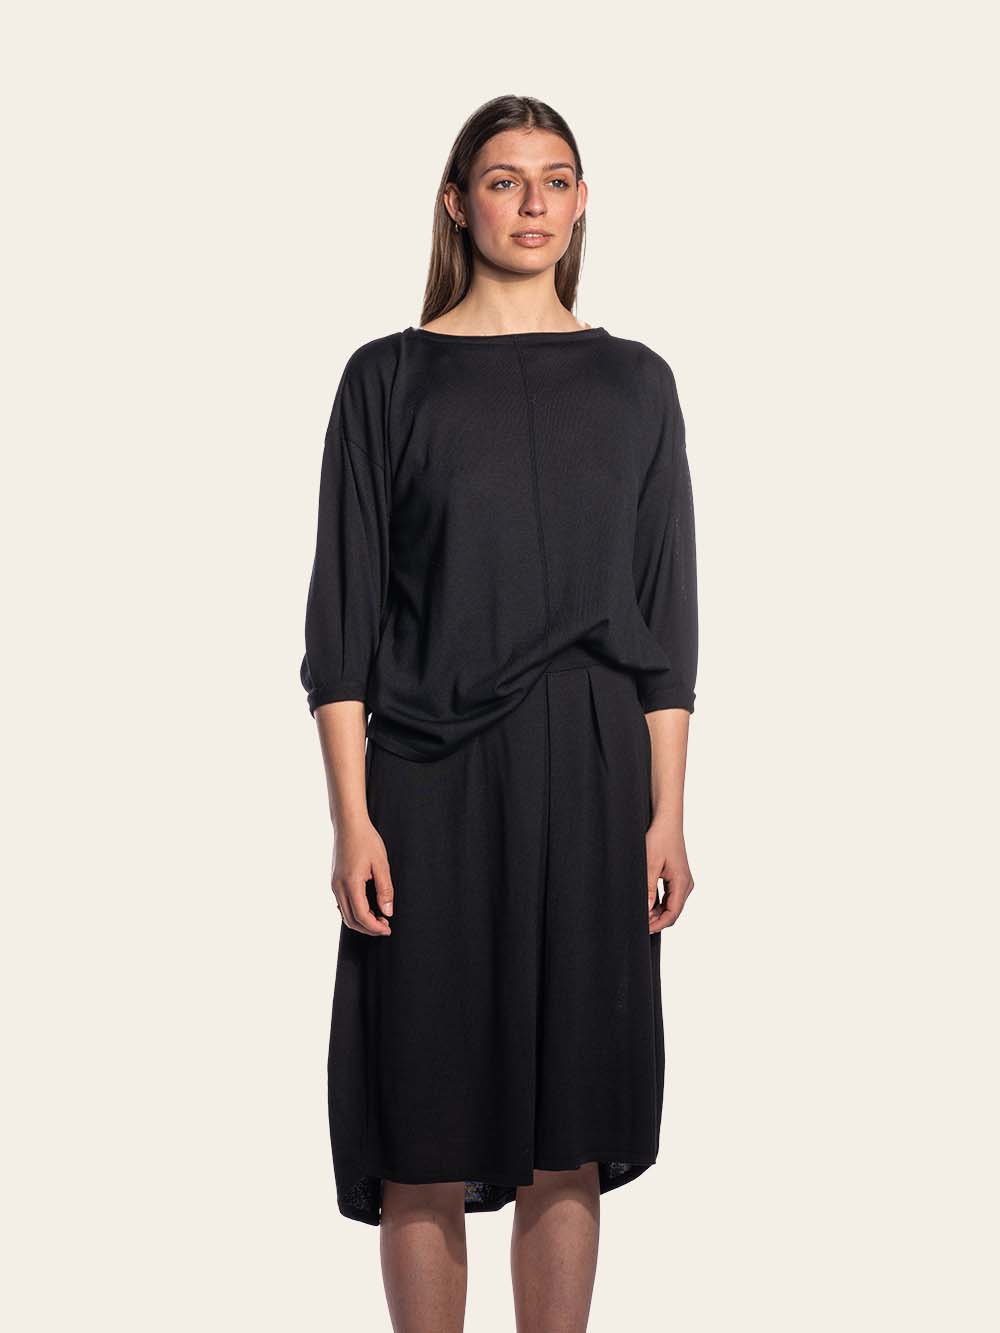 Black merino wool skirt